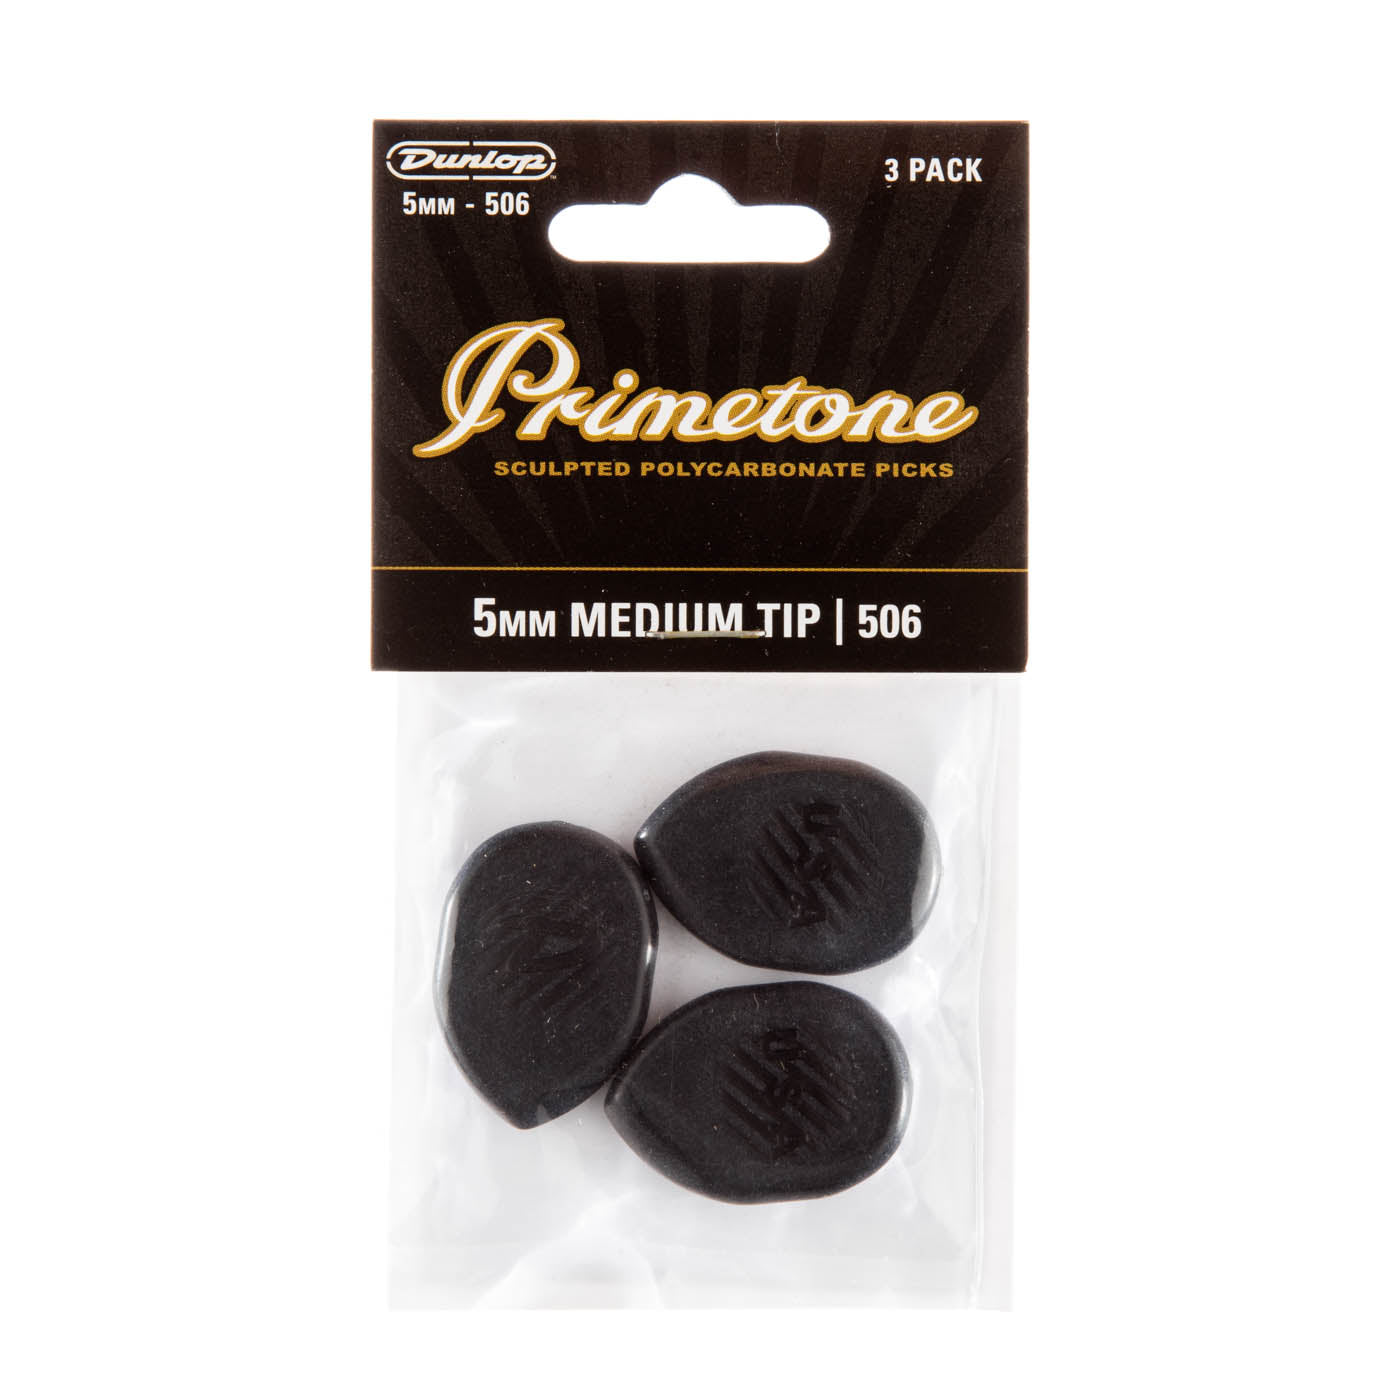 Primetone 5.0mm Medium Tip Guitar Pick (3/pack)